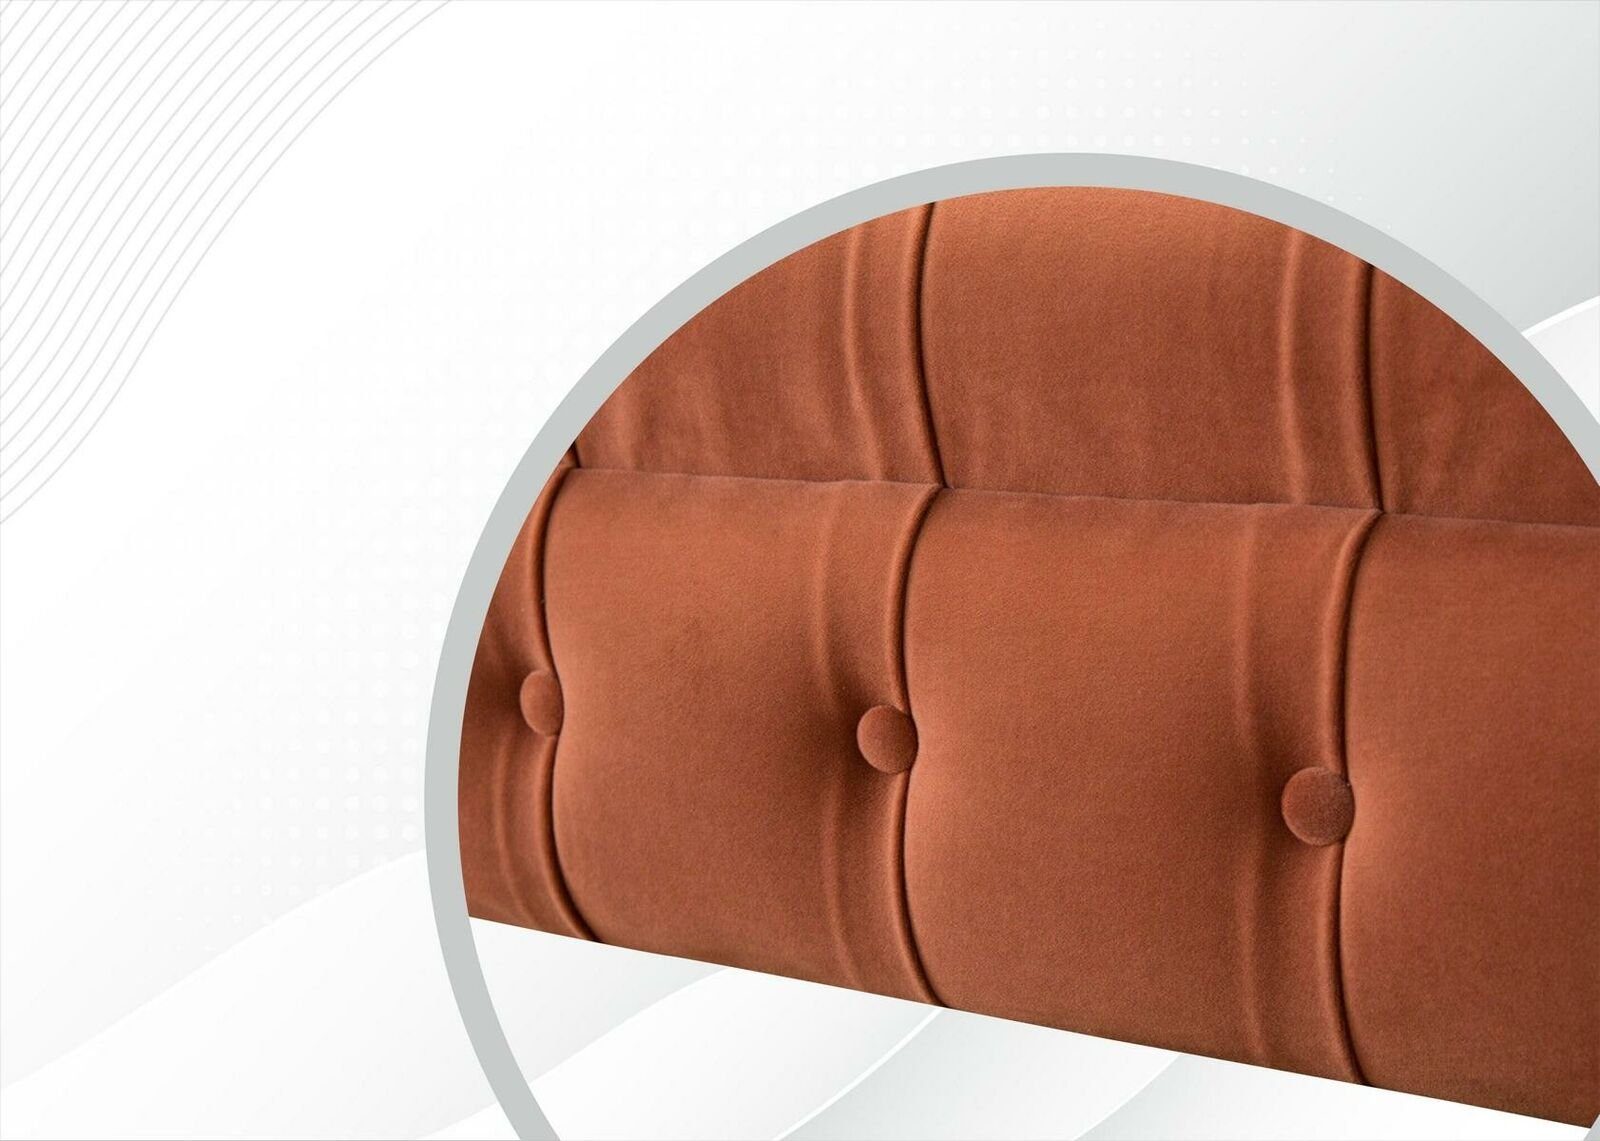 JVmoebel Chesterfield-Sofa, Chesterfield Braun Dreisitzer Design Textil Polster Sofa Wohnzimmer Neu Stoff